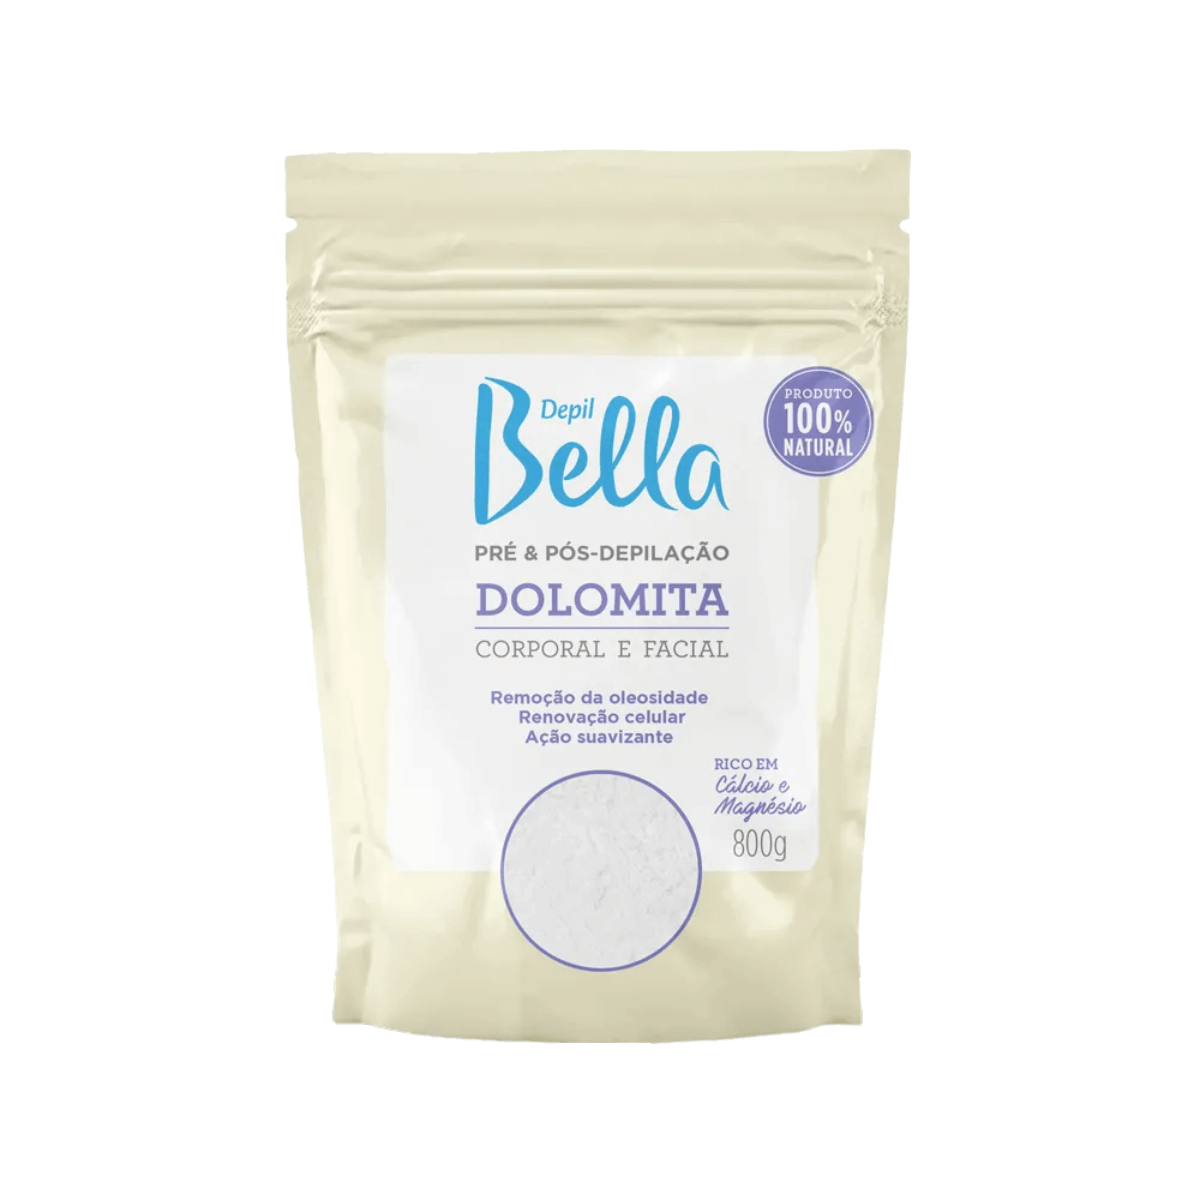 Depil Bella Dolomita Polvos para Pre y Post Depilación Corporal y Facial - 800G - depilcompany